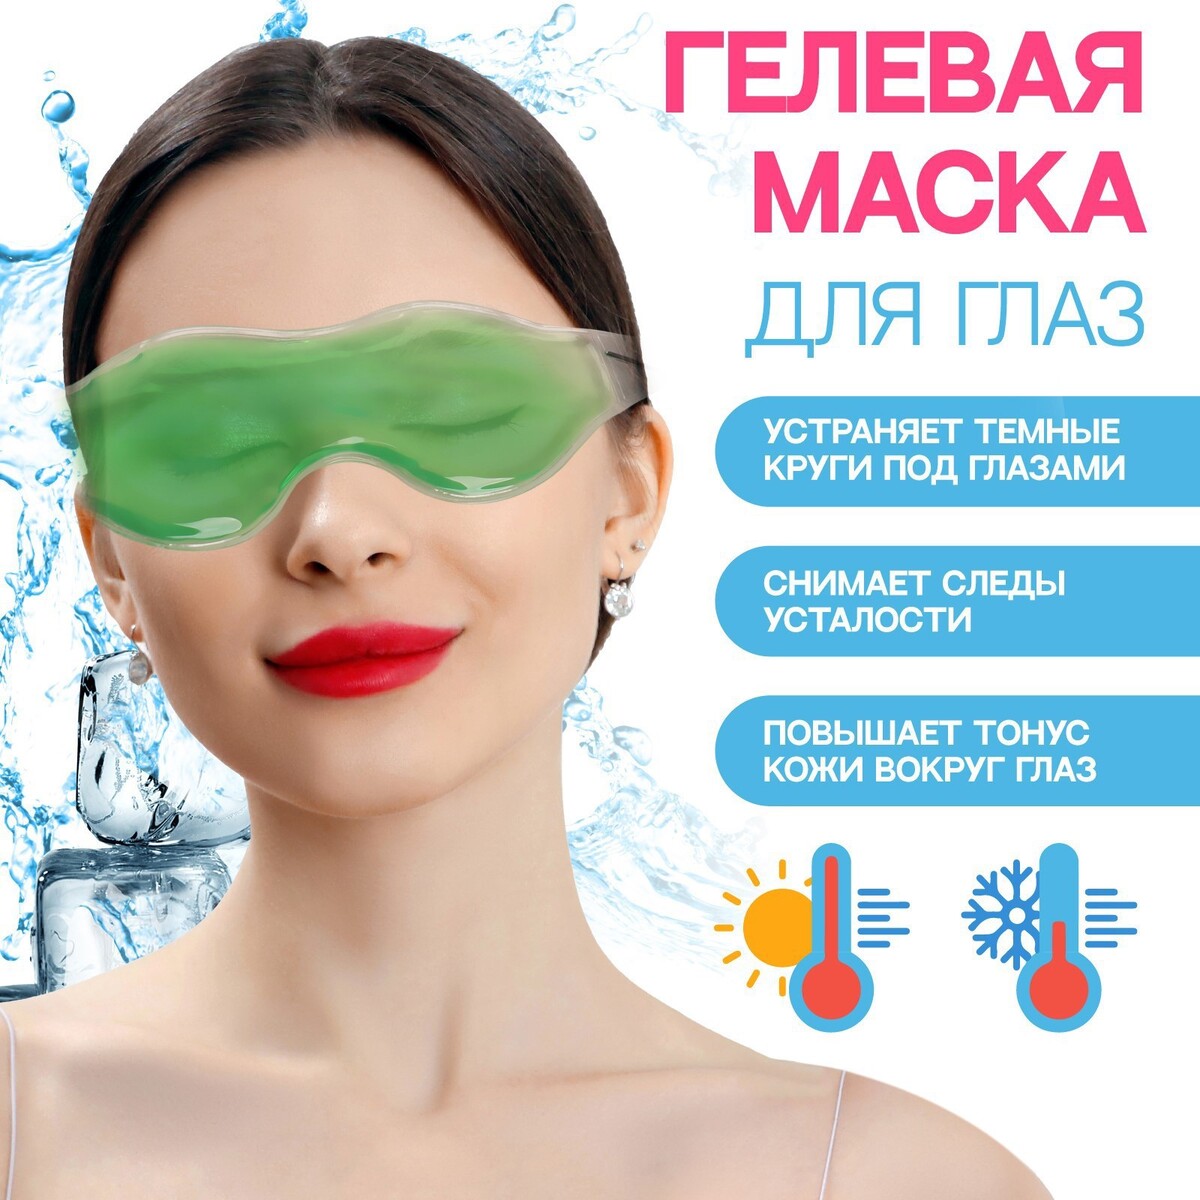 Гелевая маска для глаз, 18,5 × 5 см, цвет зеленый плавание в холодной воде как сделать первый шаг к здоровью счастью и крепкому иммунитету